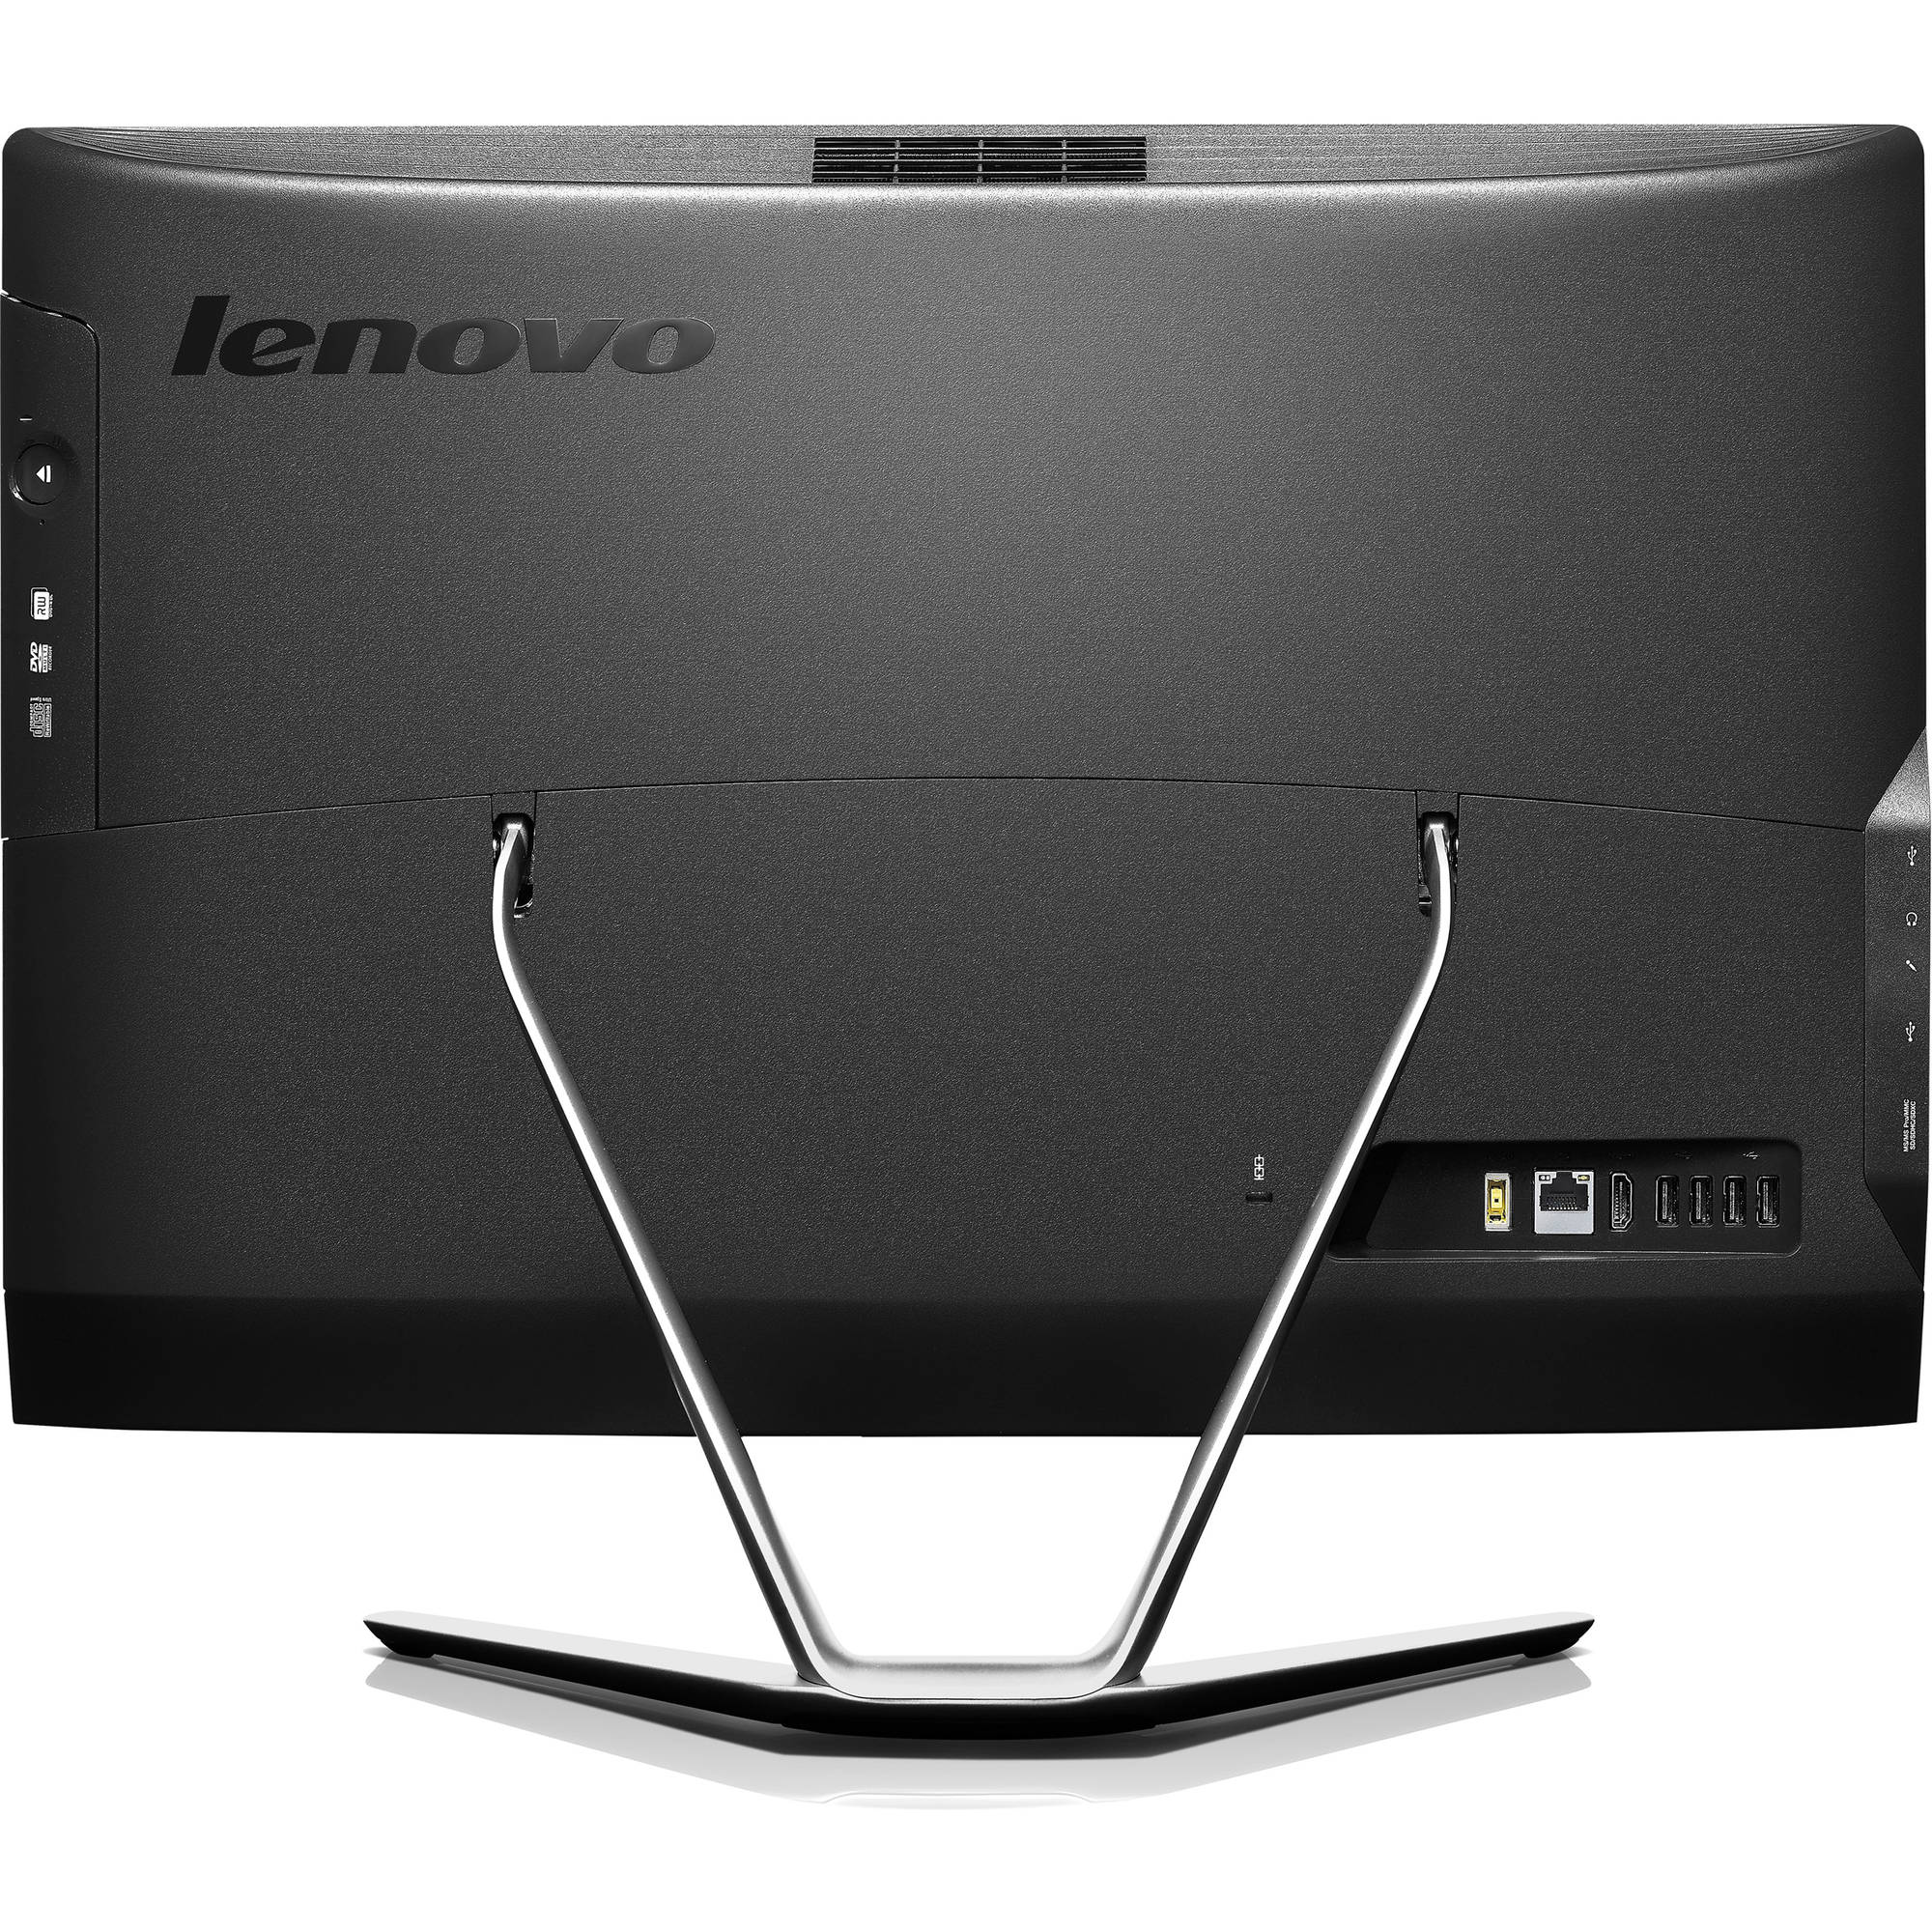 Lenovo C460 21 5 All In One Desktop